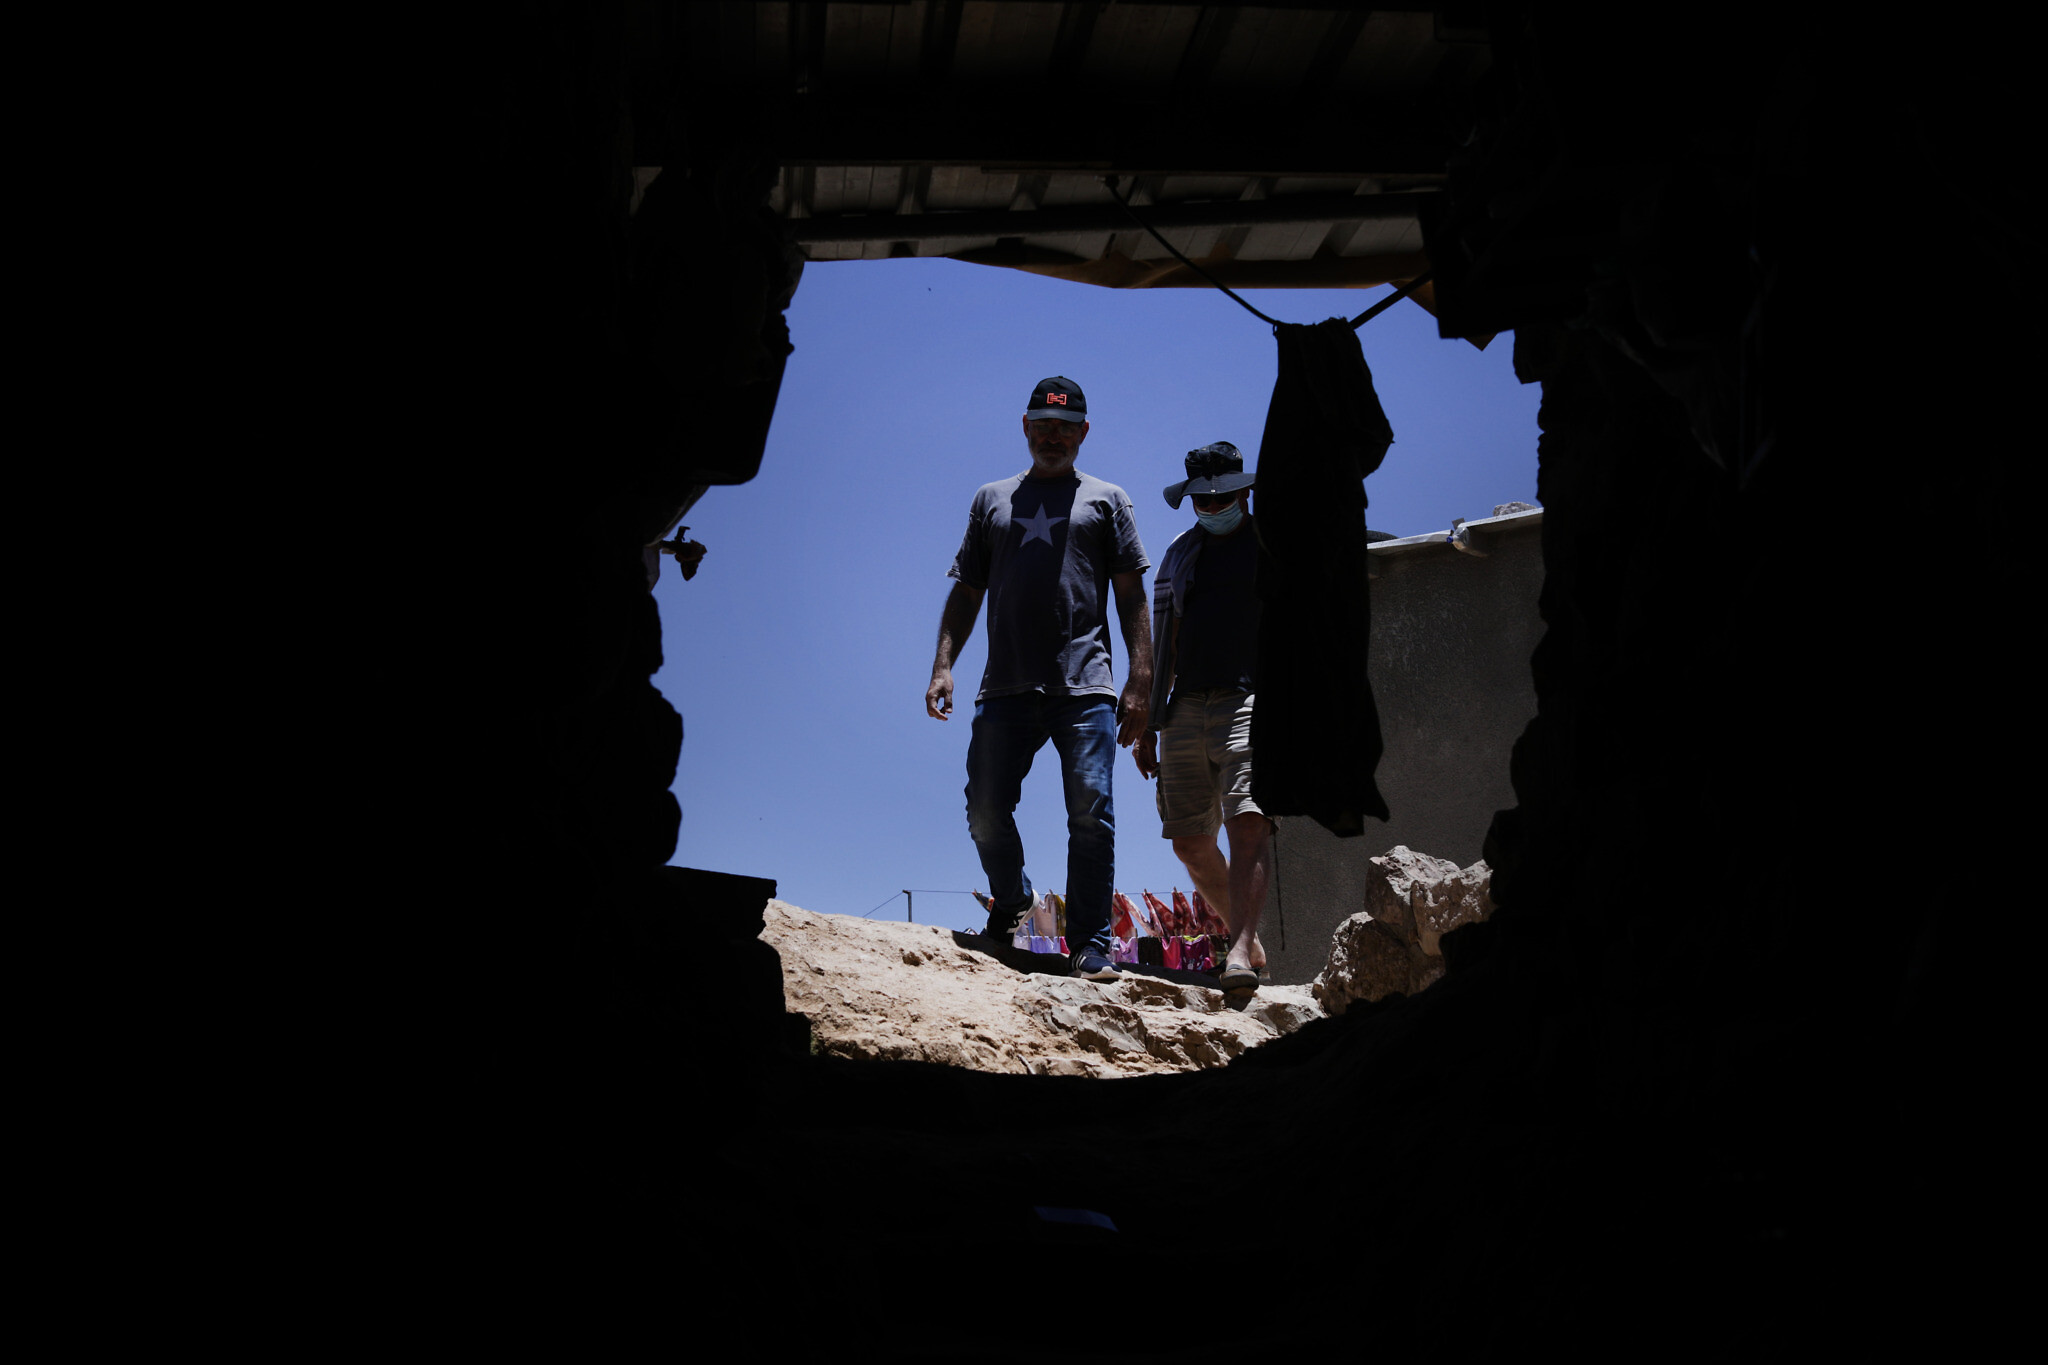 אמיר בן-דוד ונידאל יונס בכניסה למערה של משפחת יונס (צילום: אלדד רפאלי)